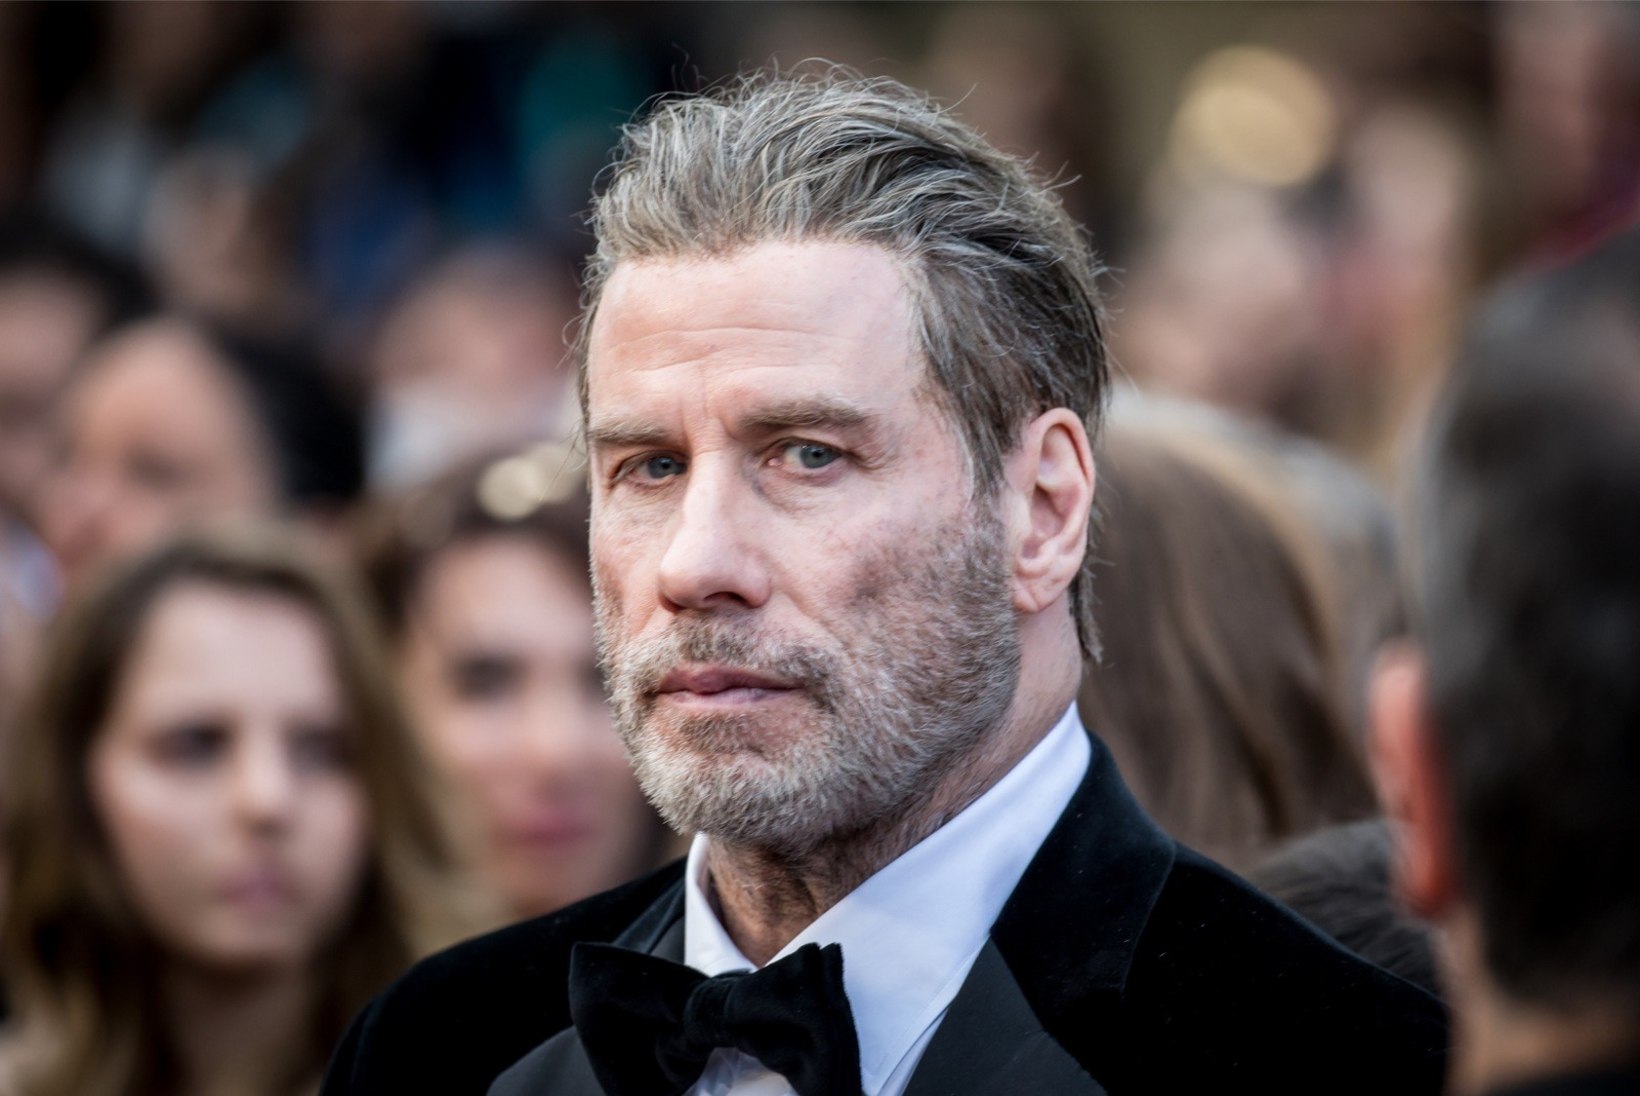 KARM: kriitikud teevad Travolta uue filmi "Gotti" pihuks ja põrmuks